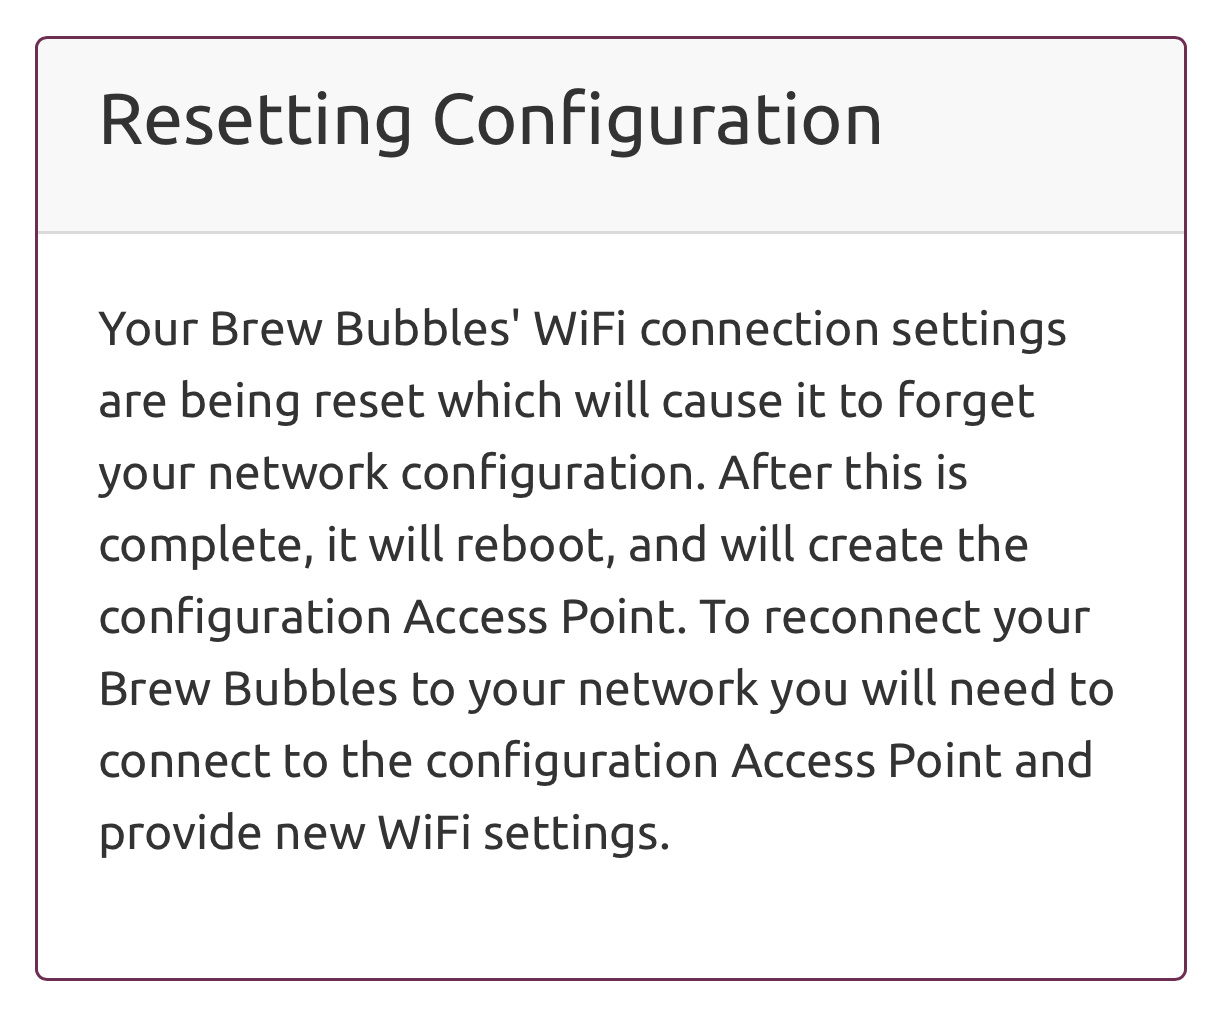 Reset Wifi confirmed